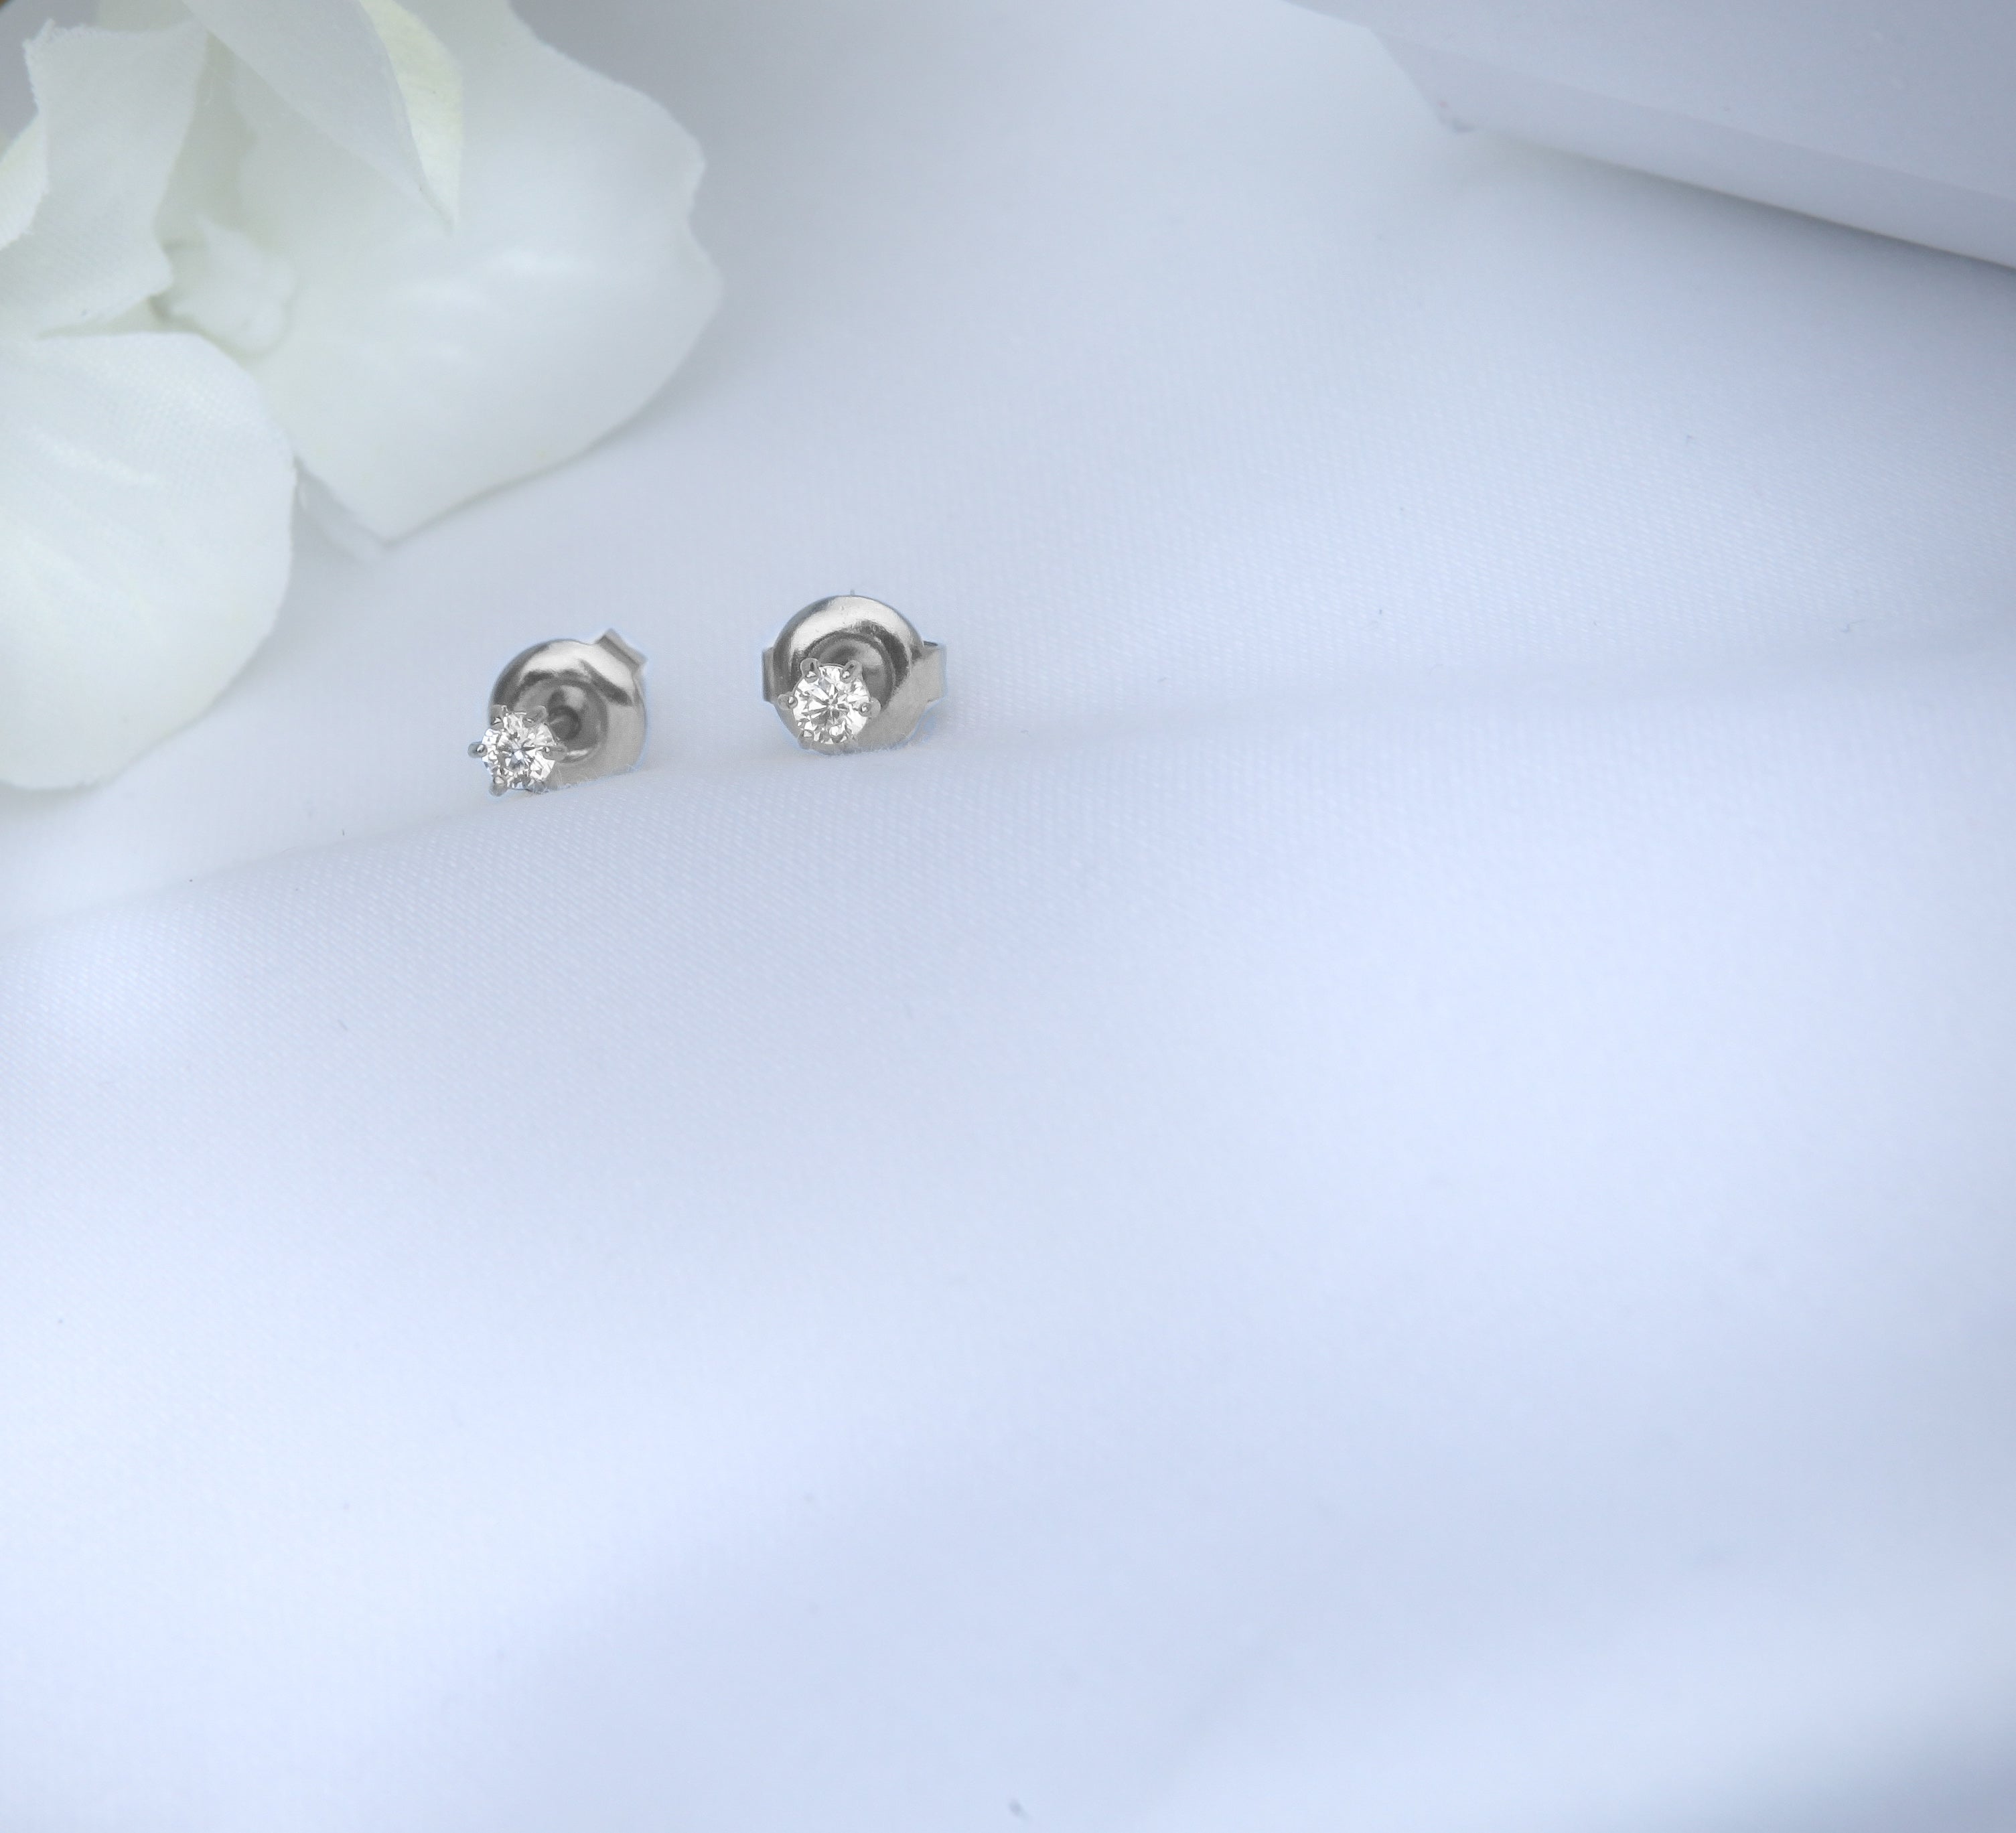 2mm Miniature Zirconia Studs - 18k Gold/Silver Earrings - Ocean Wave Jewelry